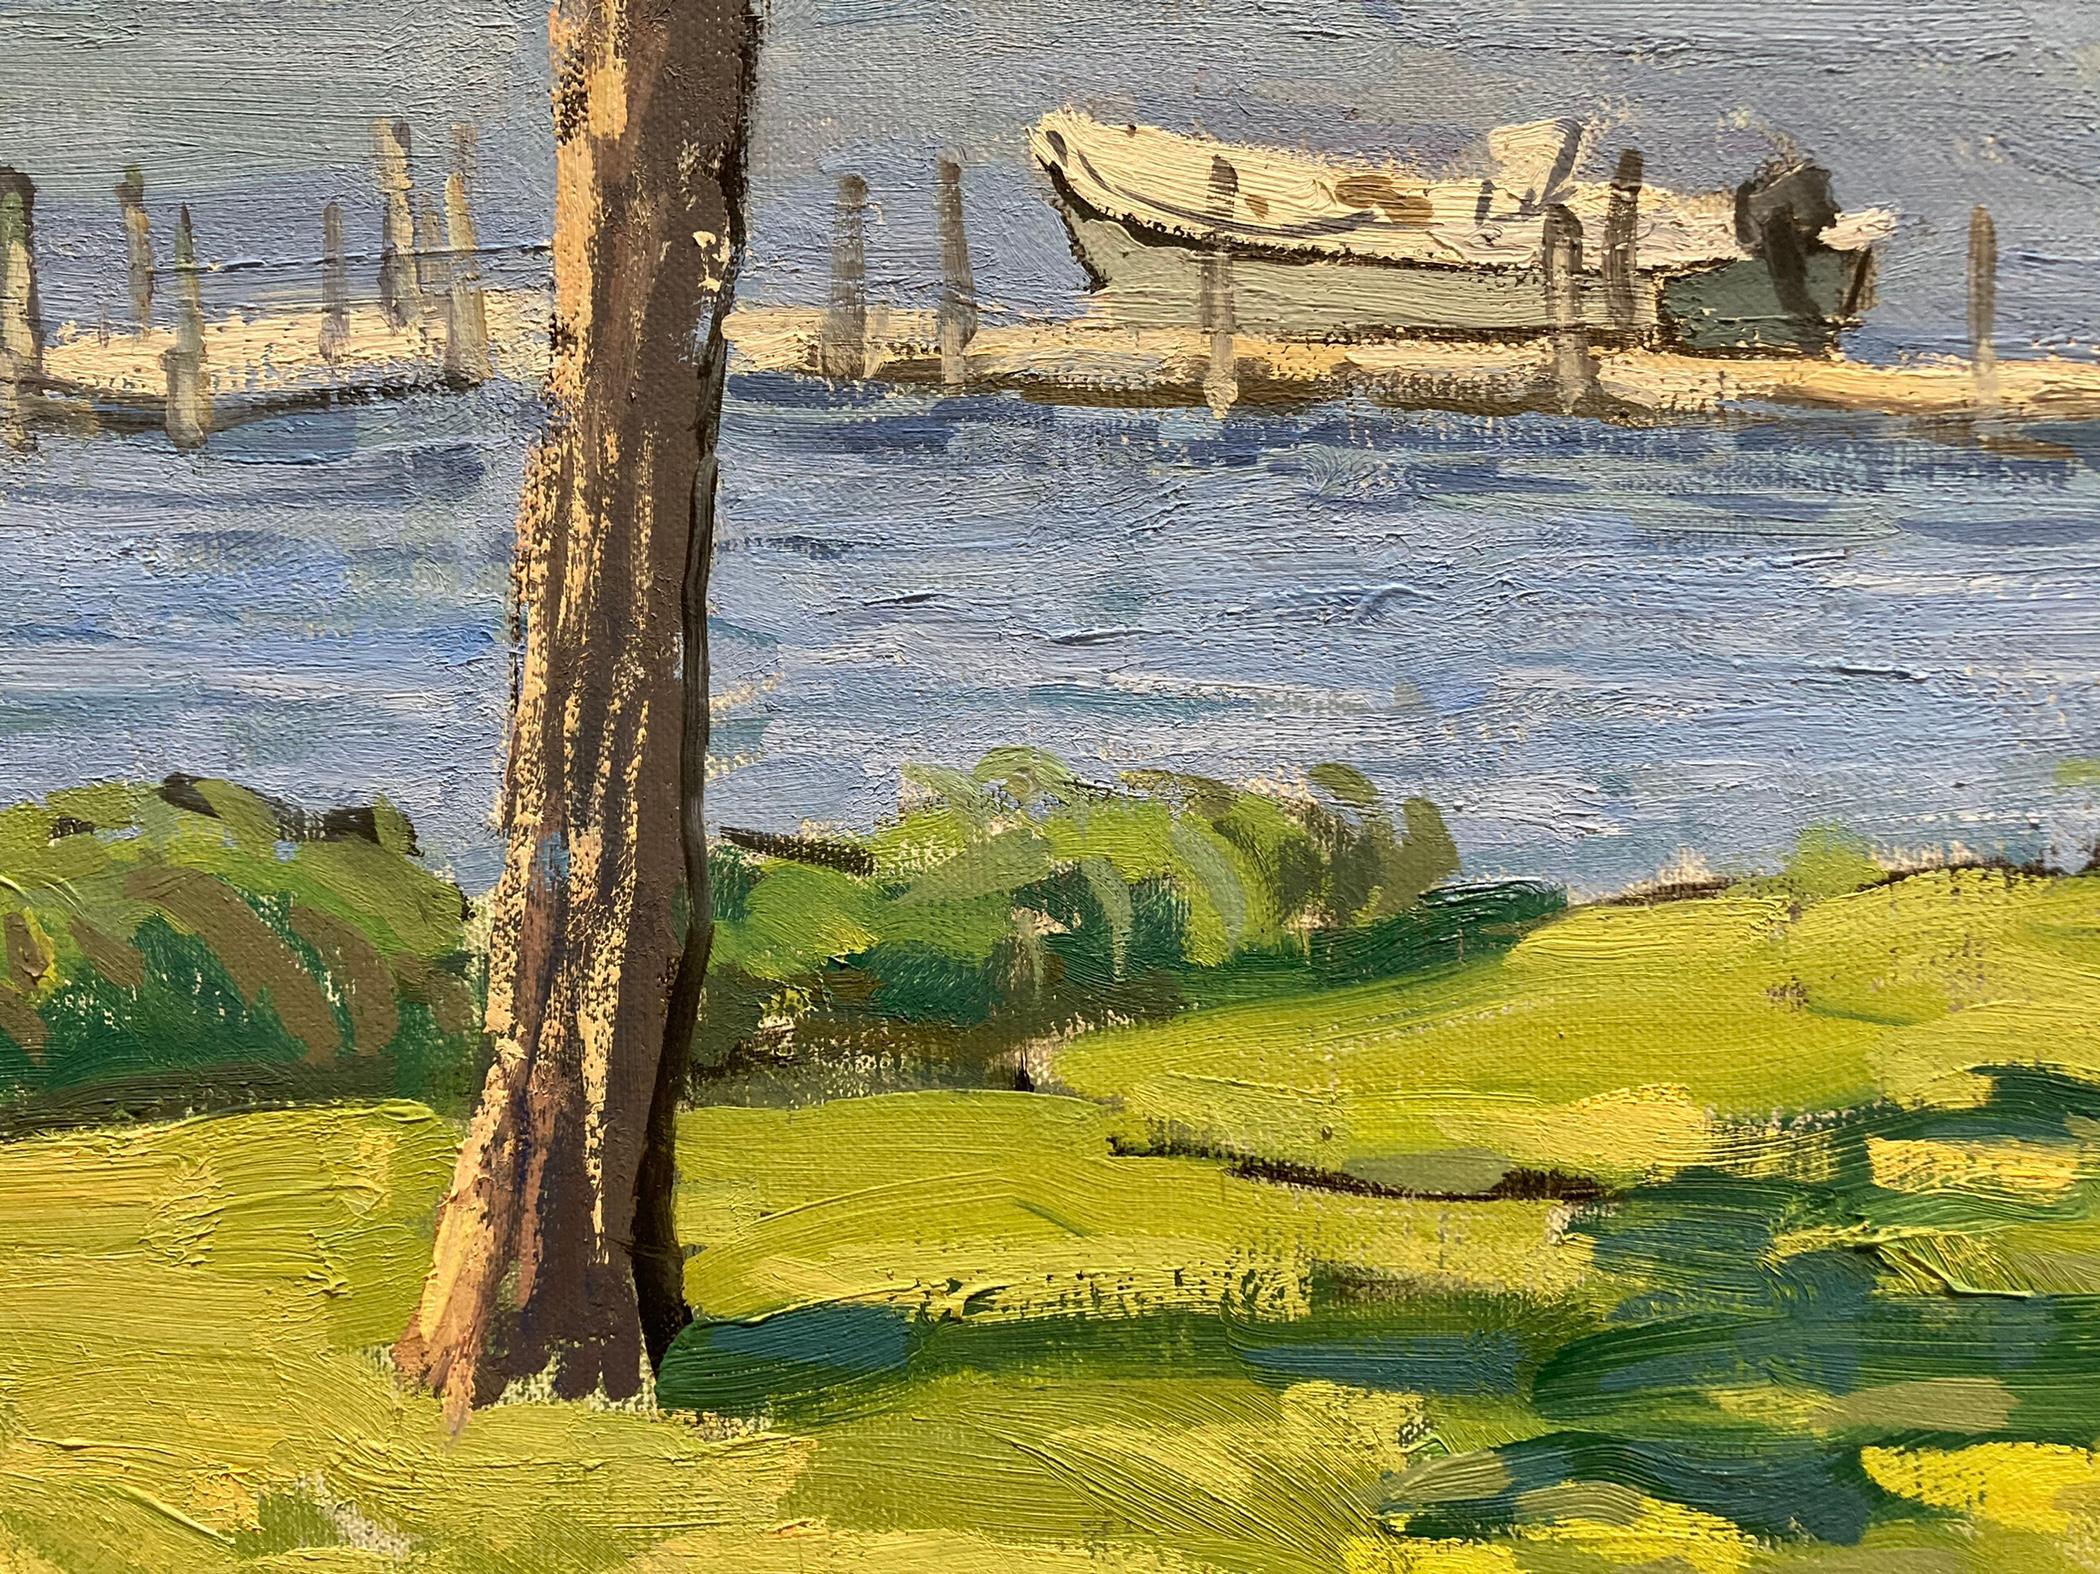 Peinture à l'huile représentant des arbres surplombant un port. Les arbres d'un parc herbeux et ombragé encadrent les jetées et les bateaux en attente. Au loin, des voiliers flottent, pointant vers la gauche de la toile. Les ombres pommelées sont